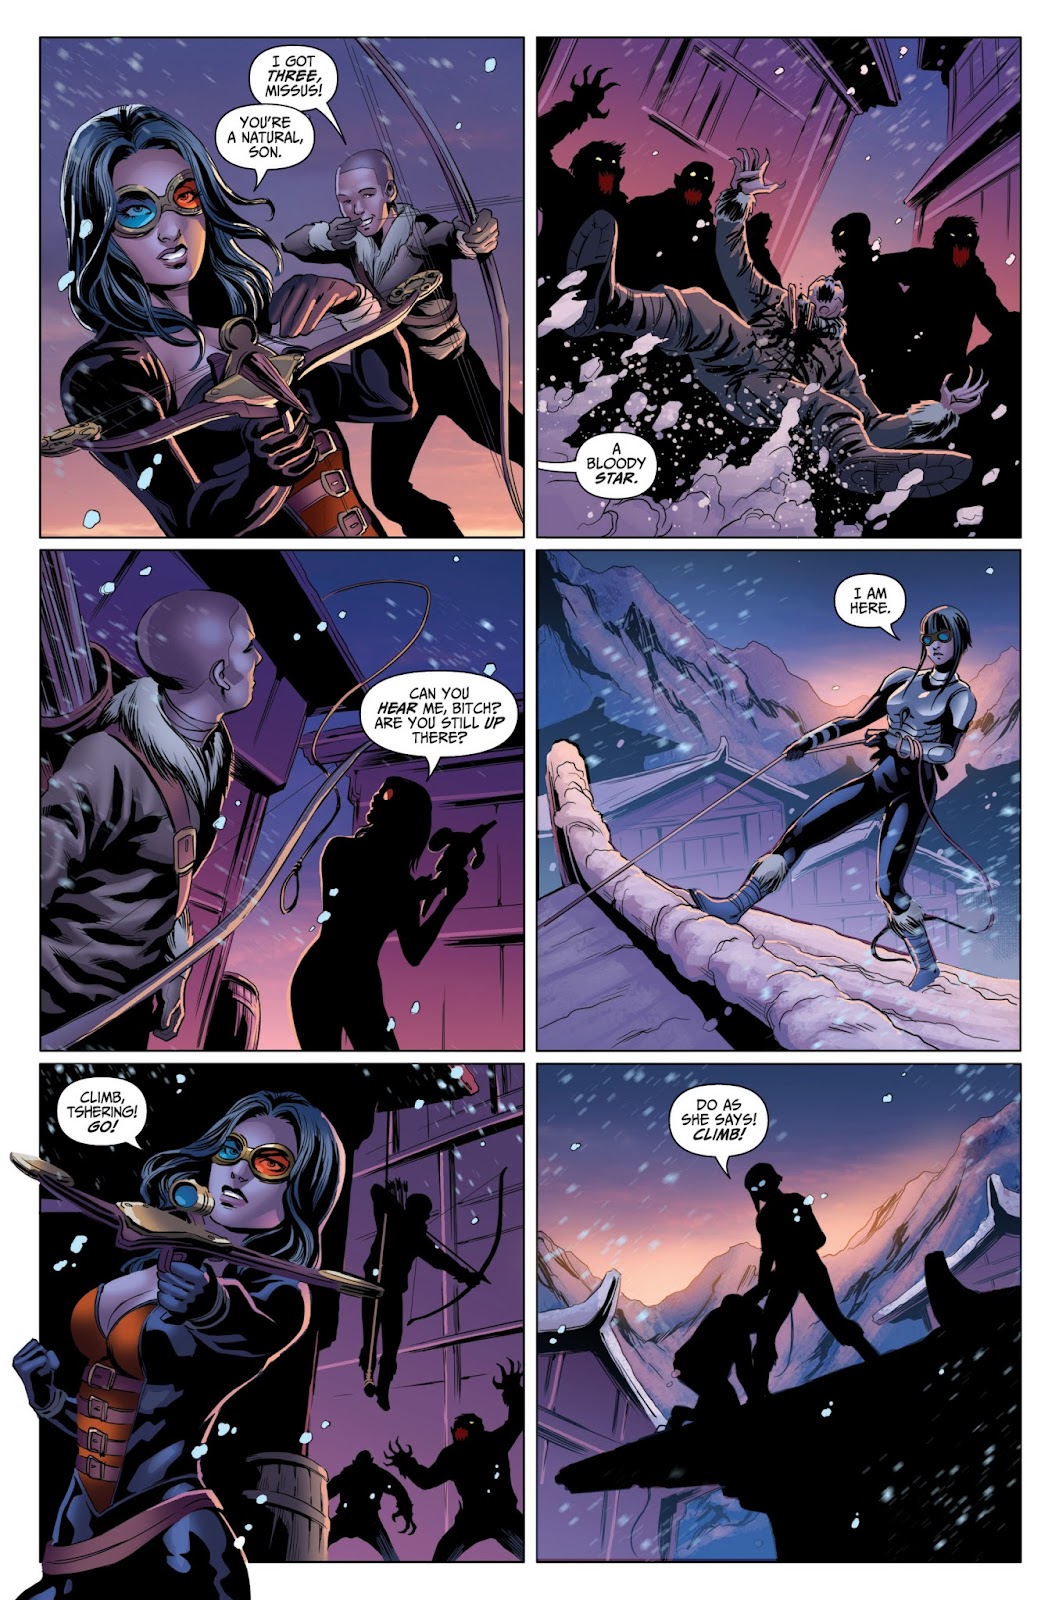 Van Helsing vs. Werewolf issue 2 - Page 19